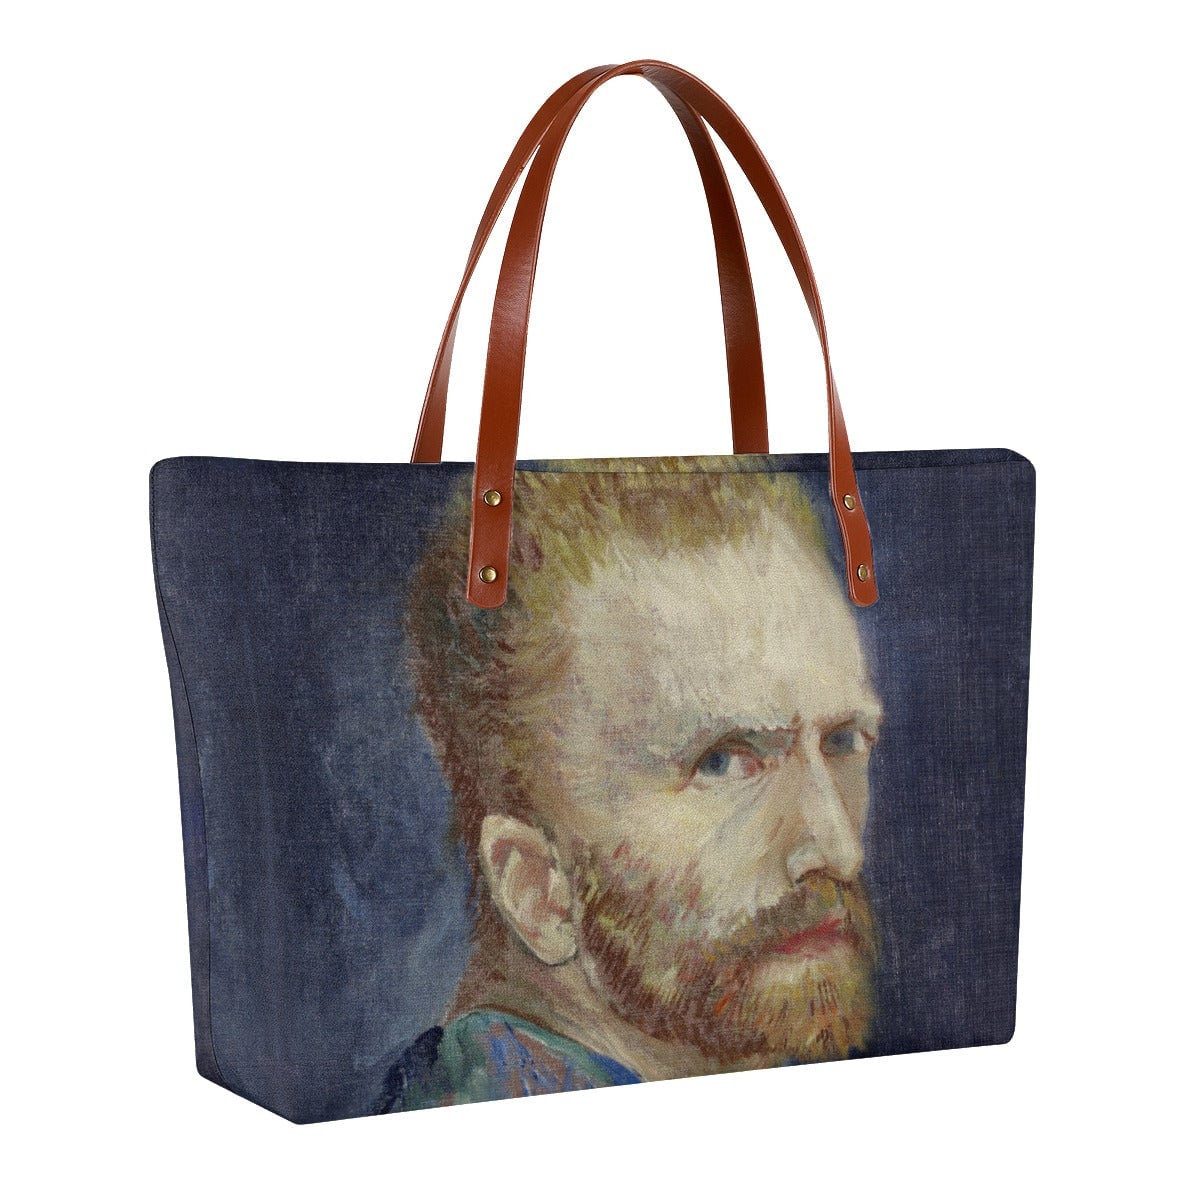 Vincent van Gogh’s 1887 Self-Portrait Tote Bag